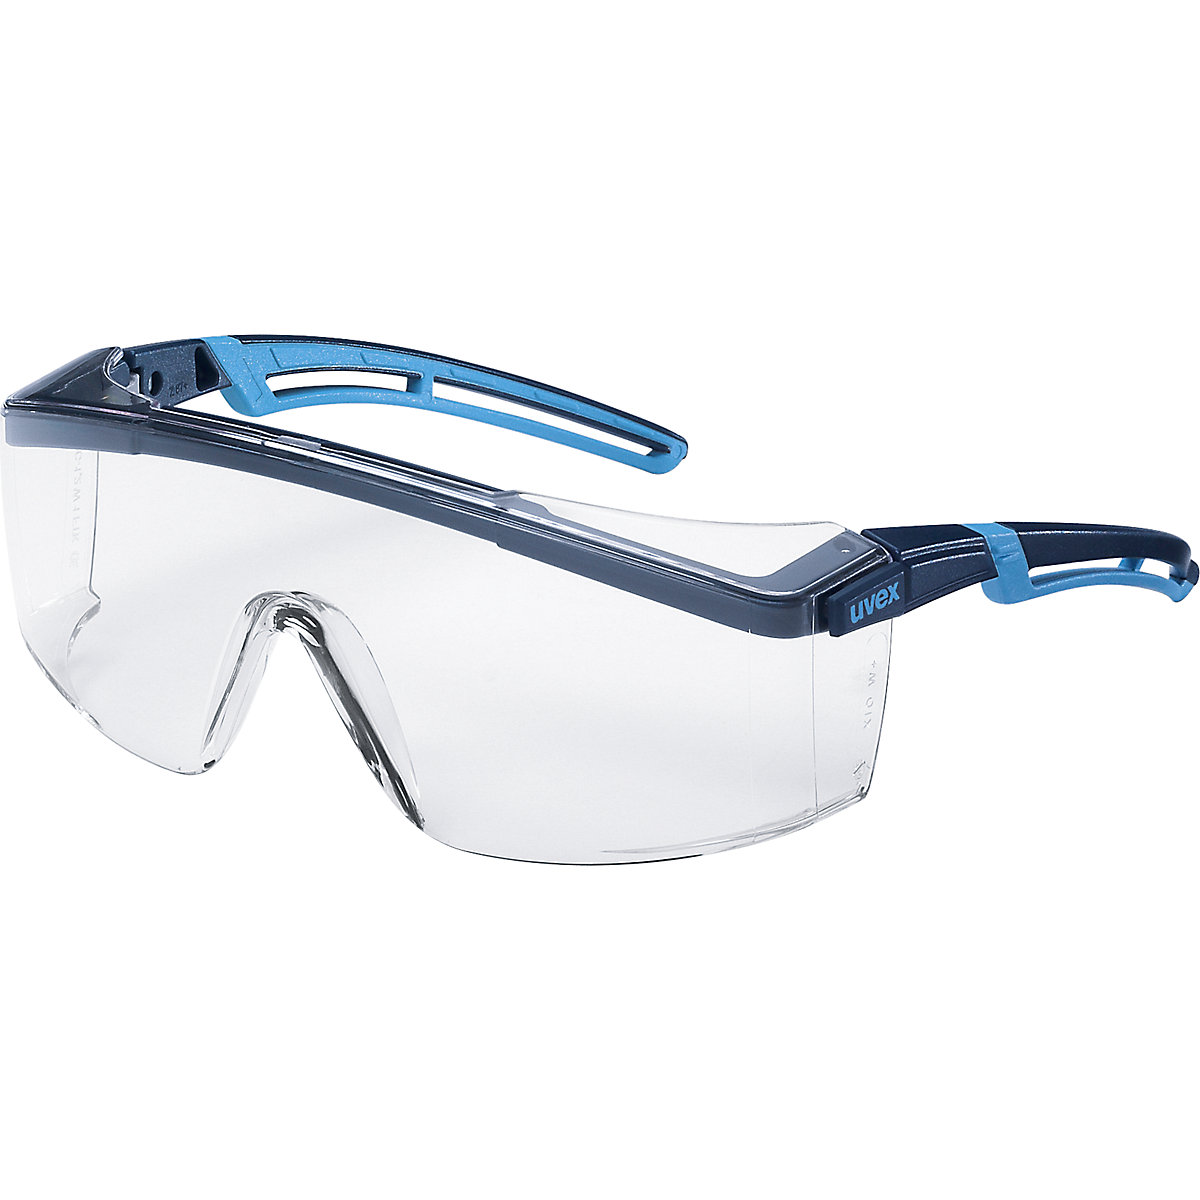 Ochranné okuliare atrospec 2.0 – Uvex